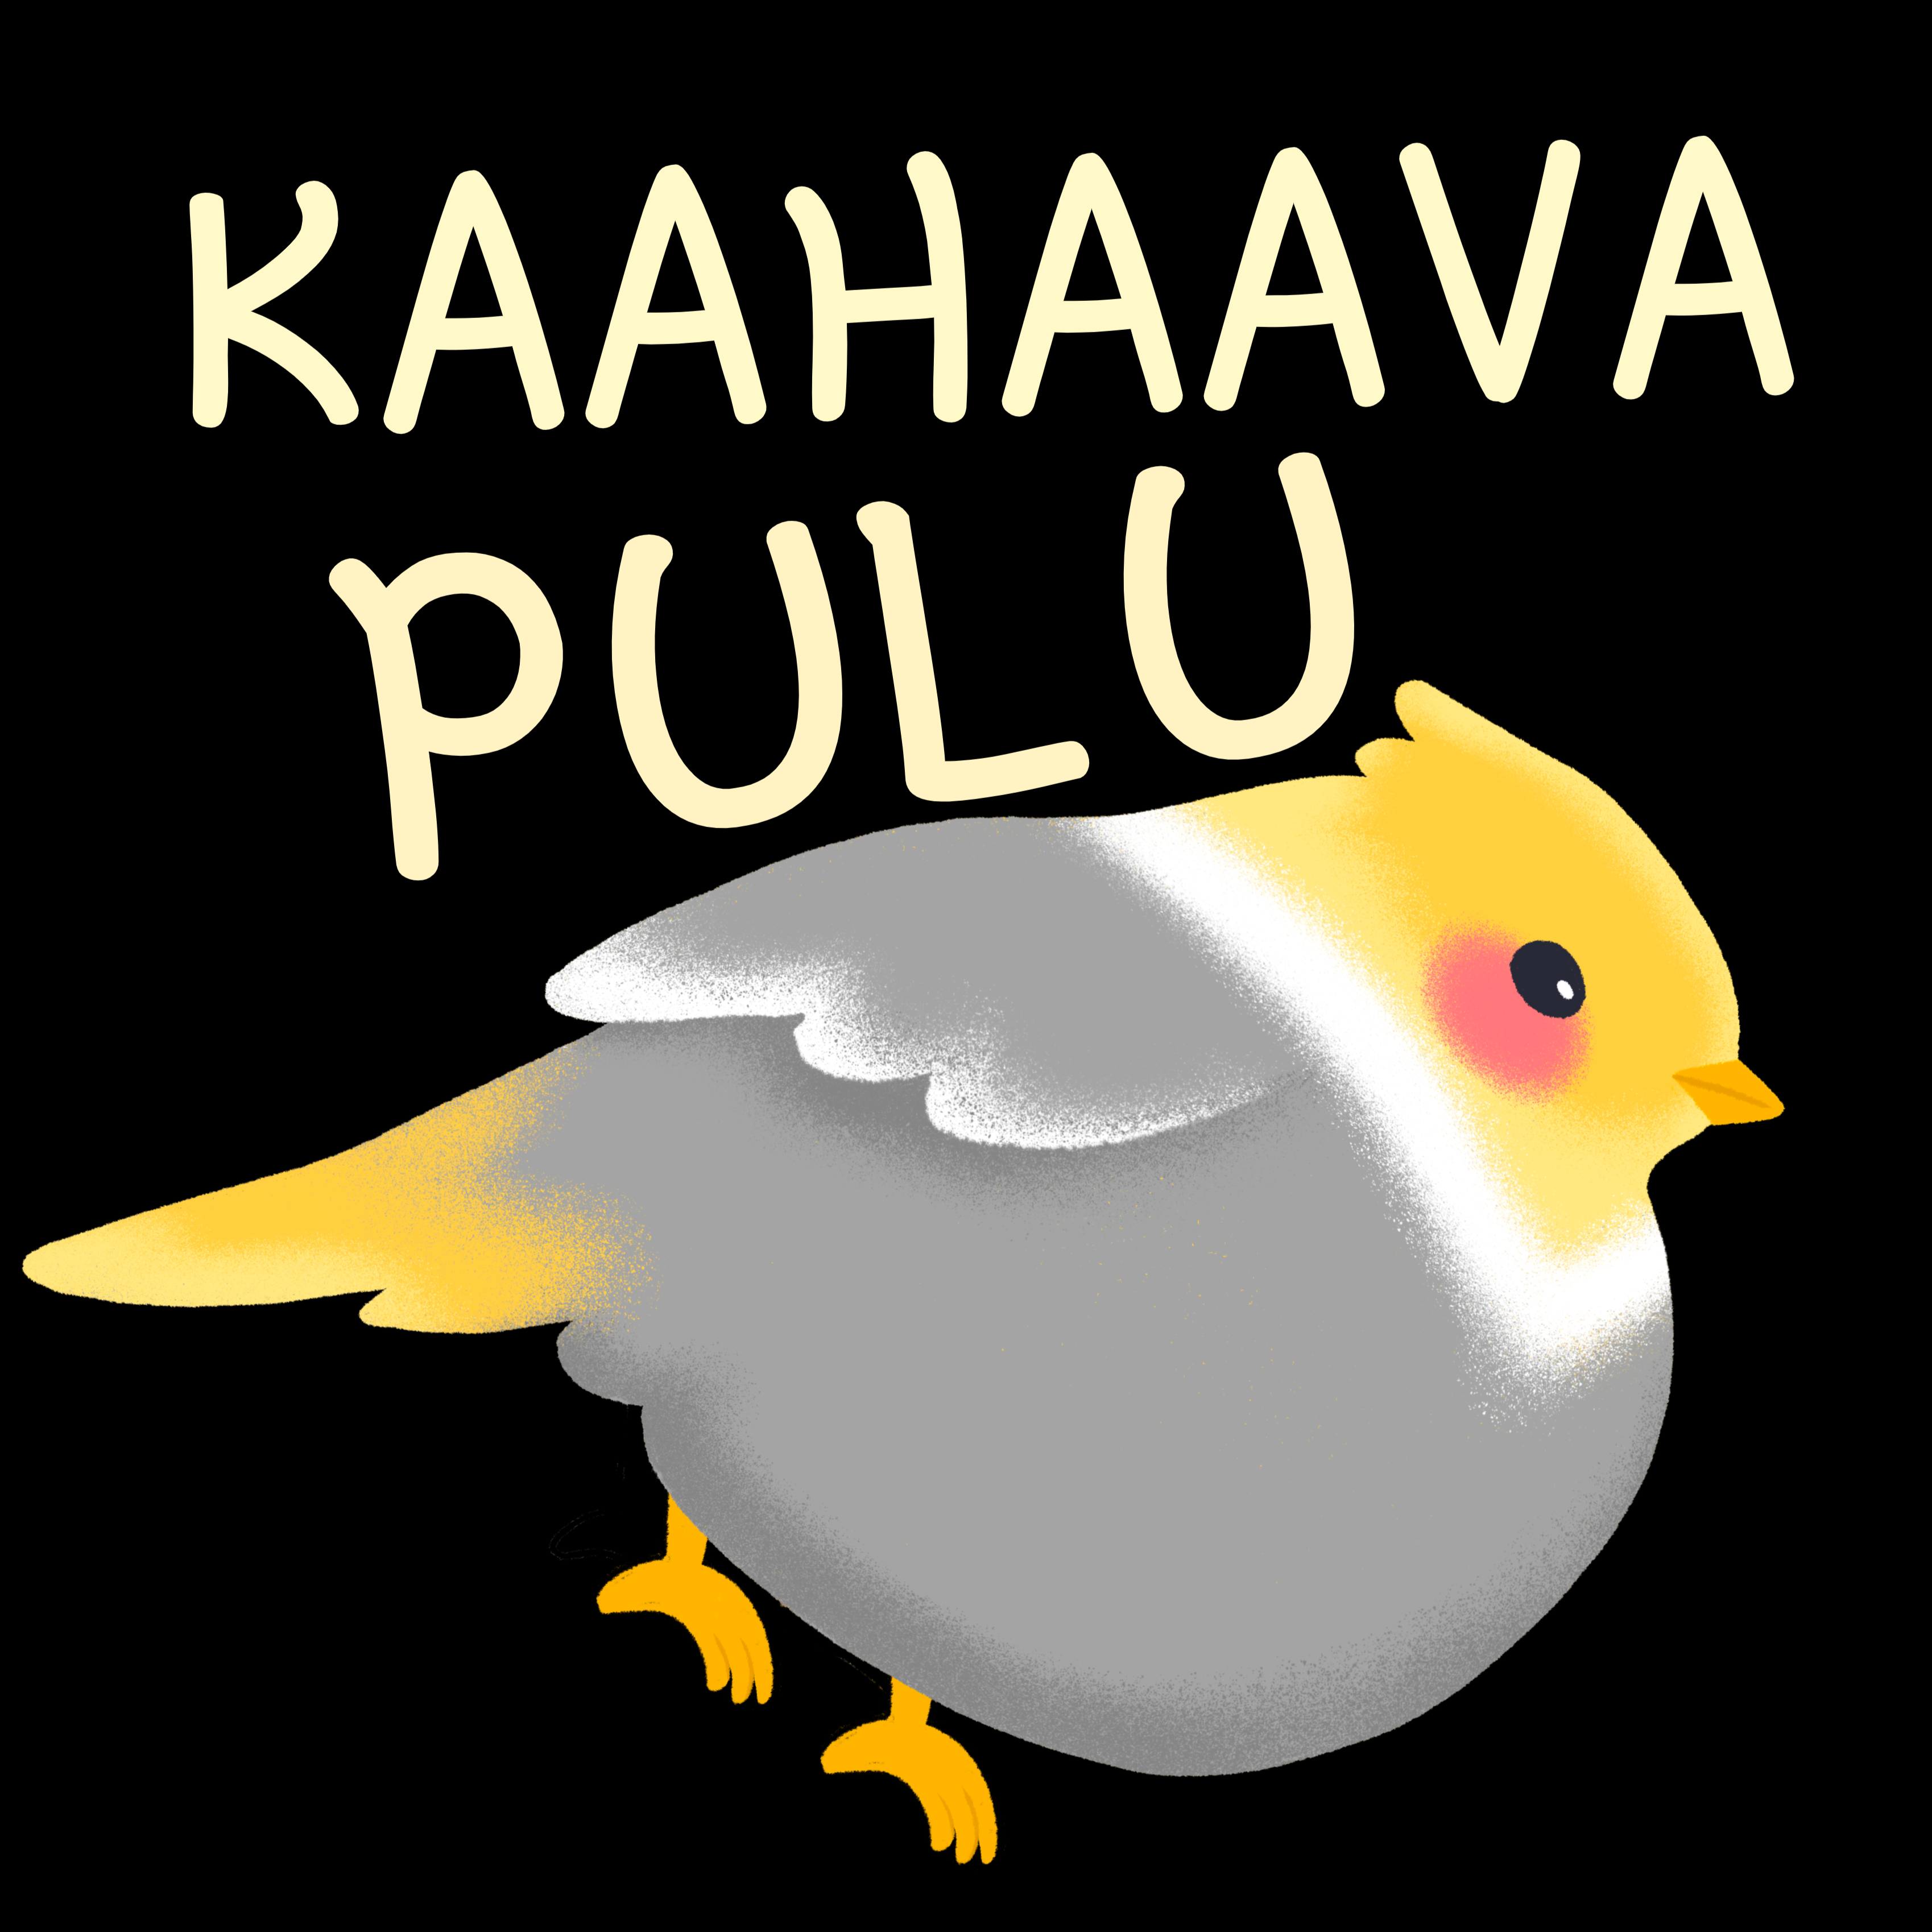 T-PAITA MUSTA - KAAHAAVA PULU - KAMALA LUONNE (2851)